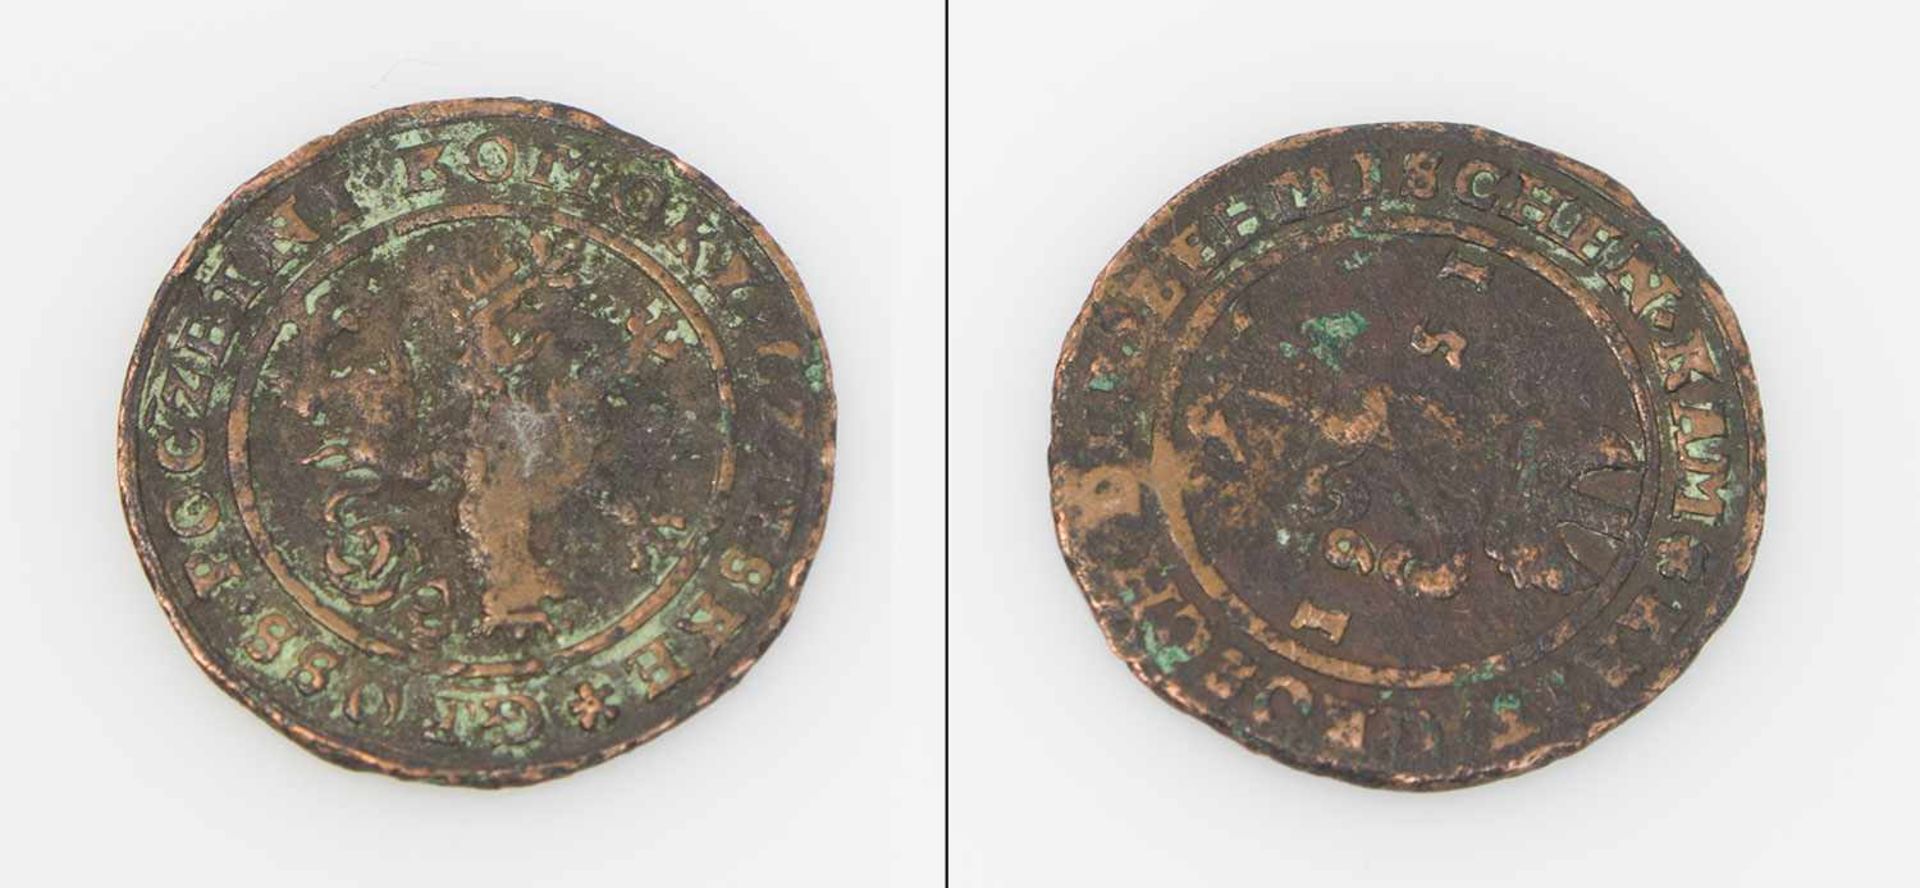 Münze Posen (?) 1561, f-ss.